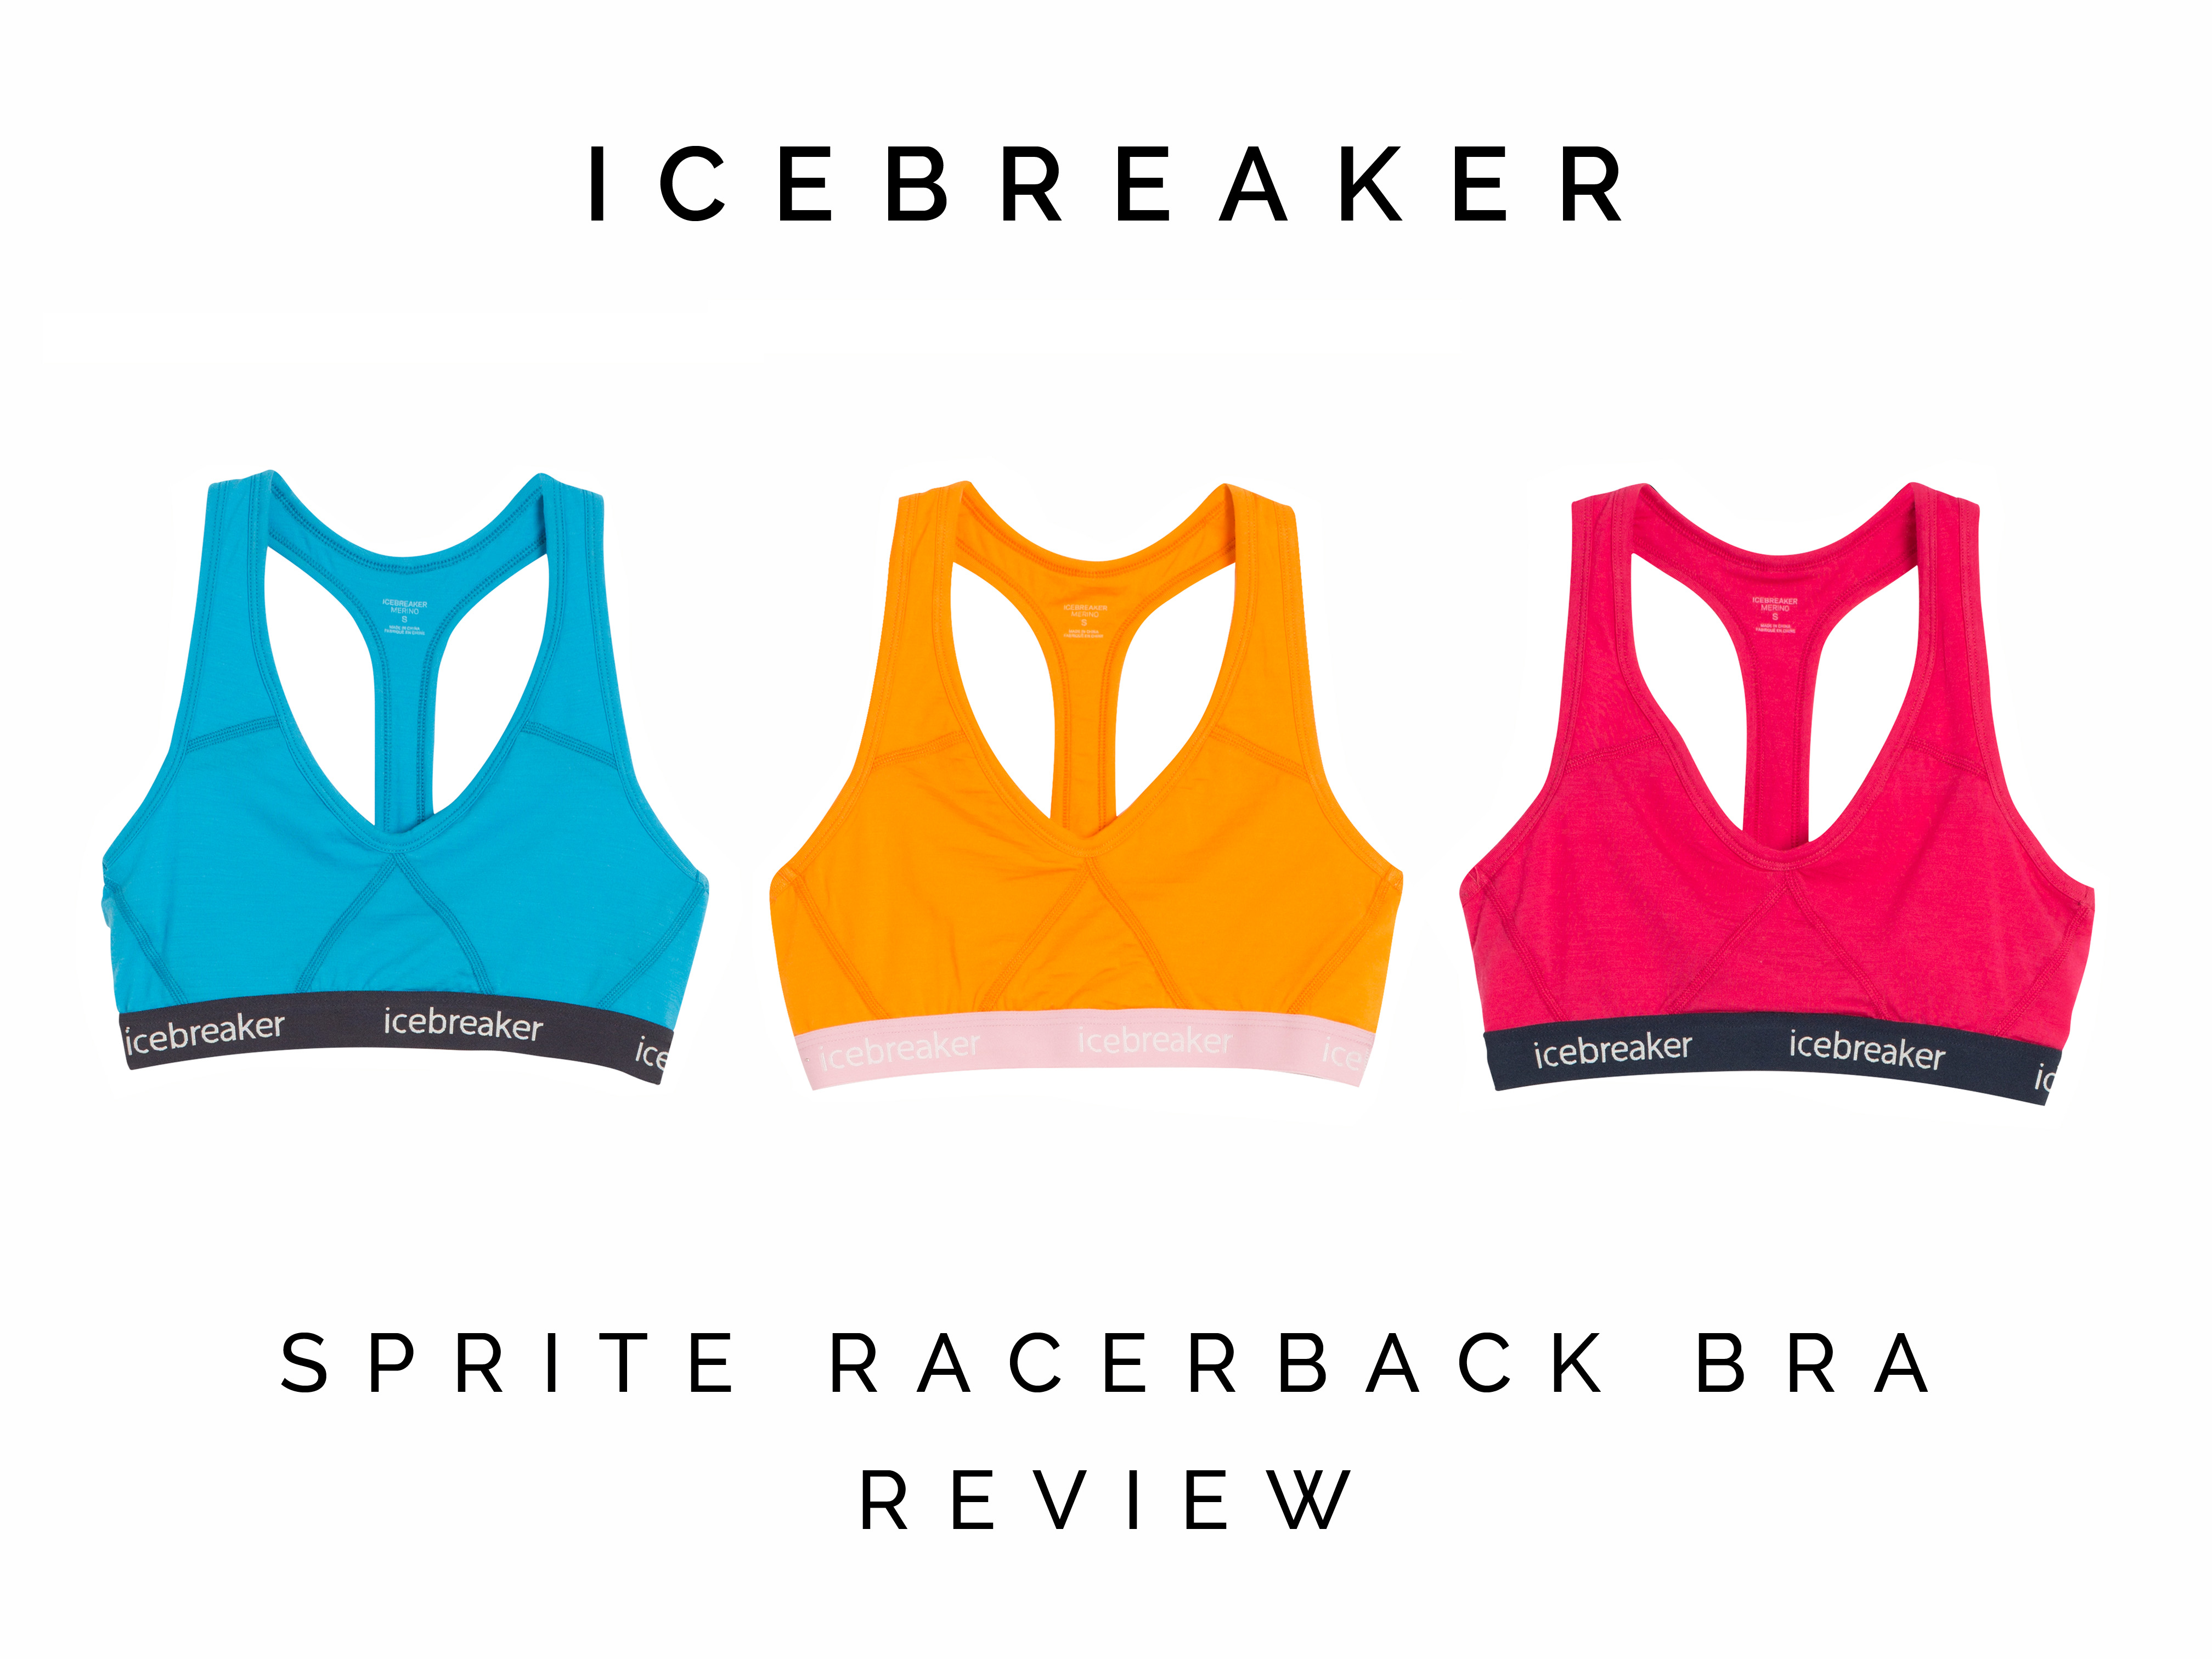 Icebreaker Sprite Racerback Bra Review